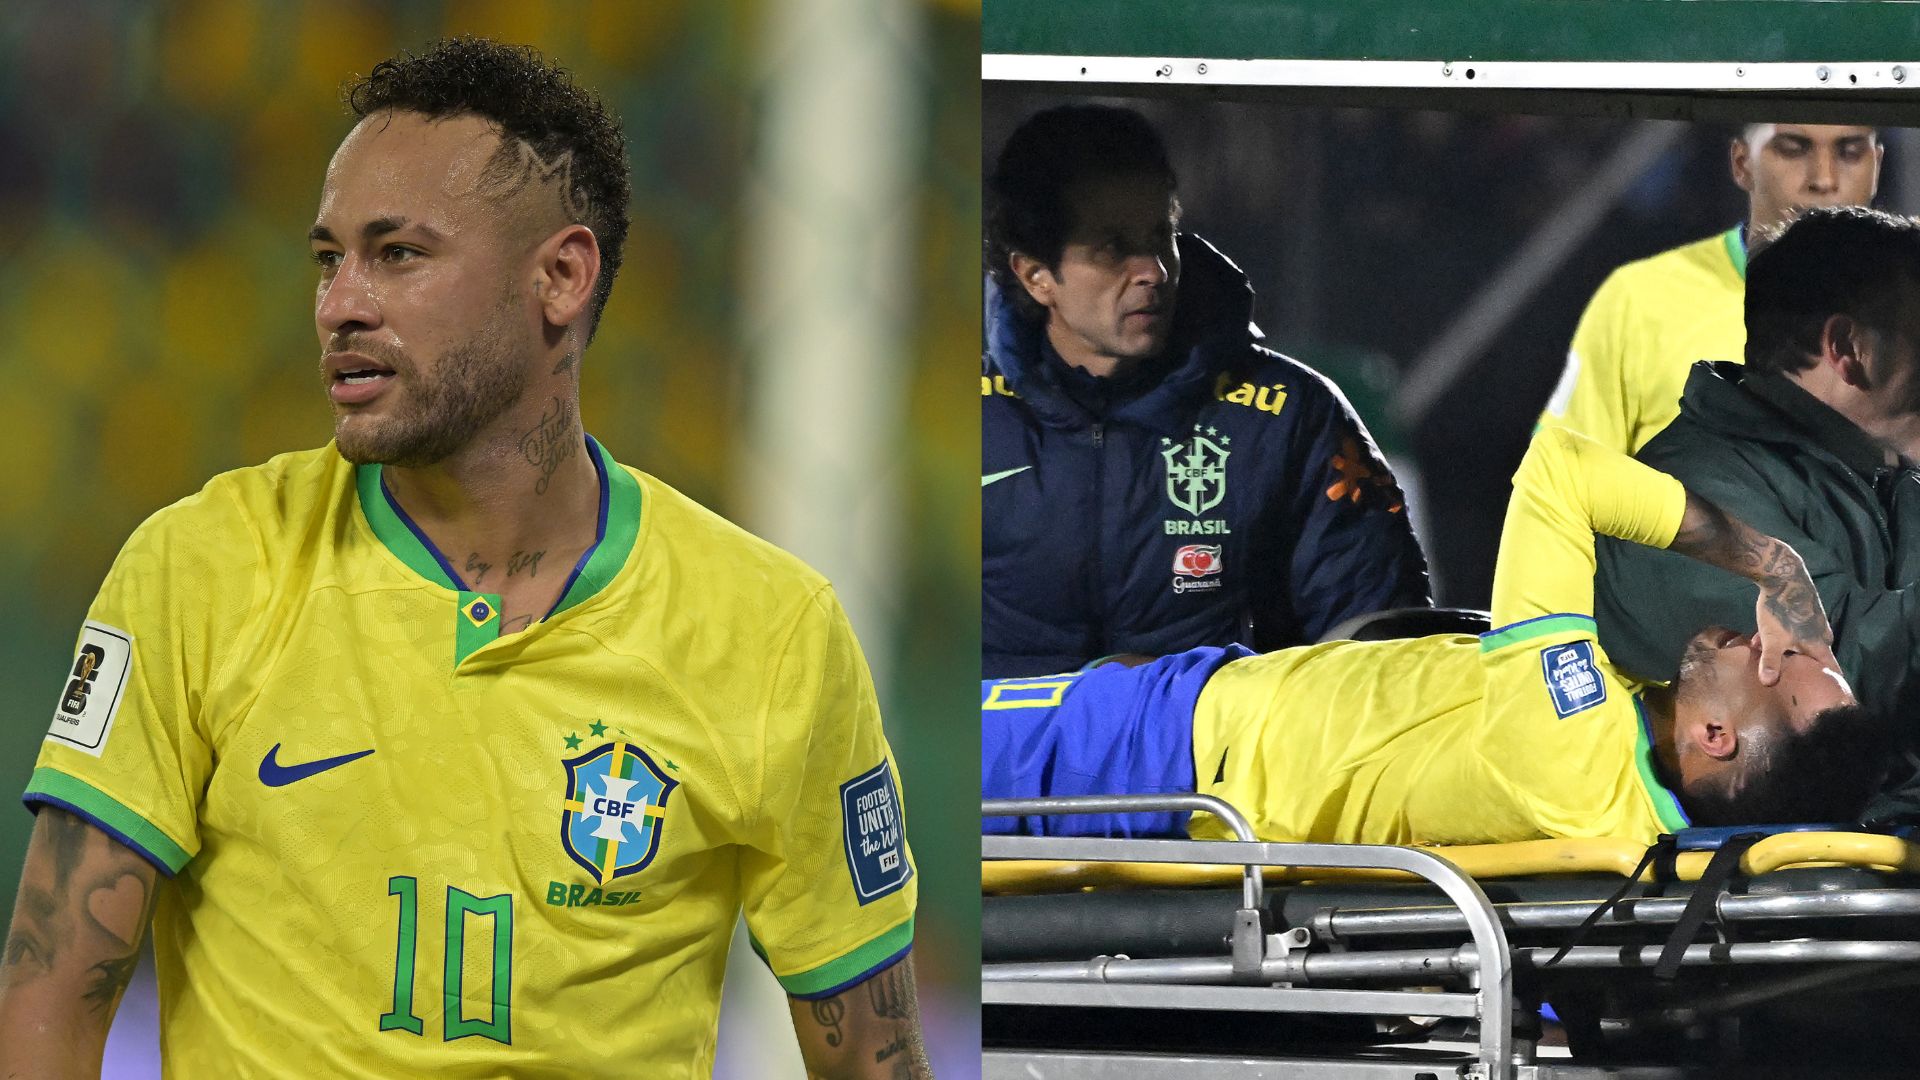 Neymar: Após jogador se machucar em jogo, Al-Hilal aponta diagnóstico e revela cirurgia no joelho; CBF também se pronuncia